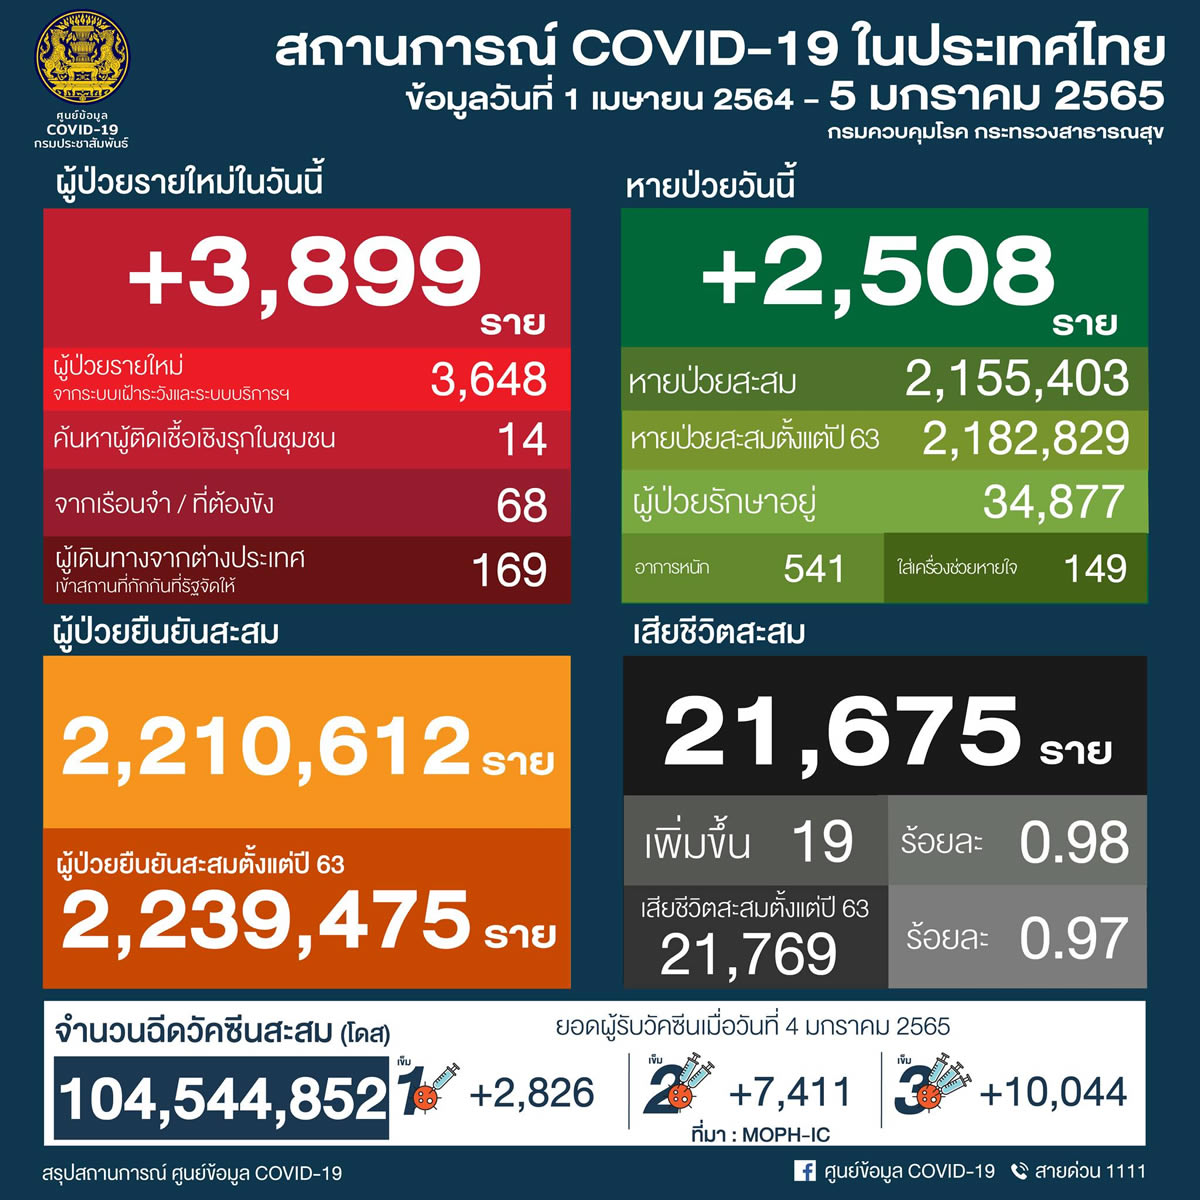 タイ 3,899人陽性 19人死亡／チョンブリ 529人陽性／バンコク 408人陽性／ウボンラチャタニ 315人陽性［2022年1月5日発表］